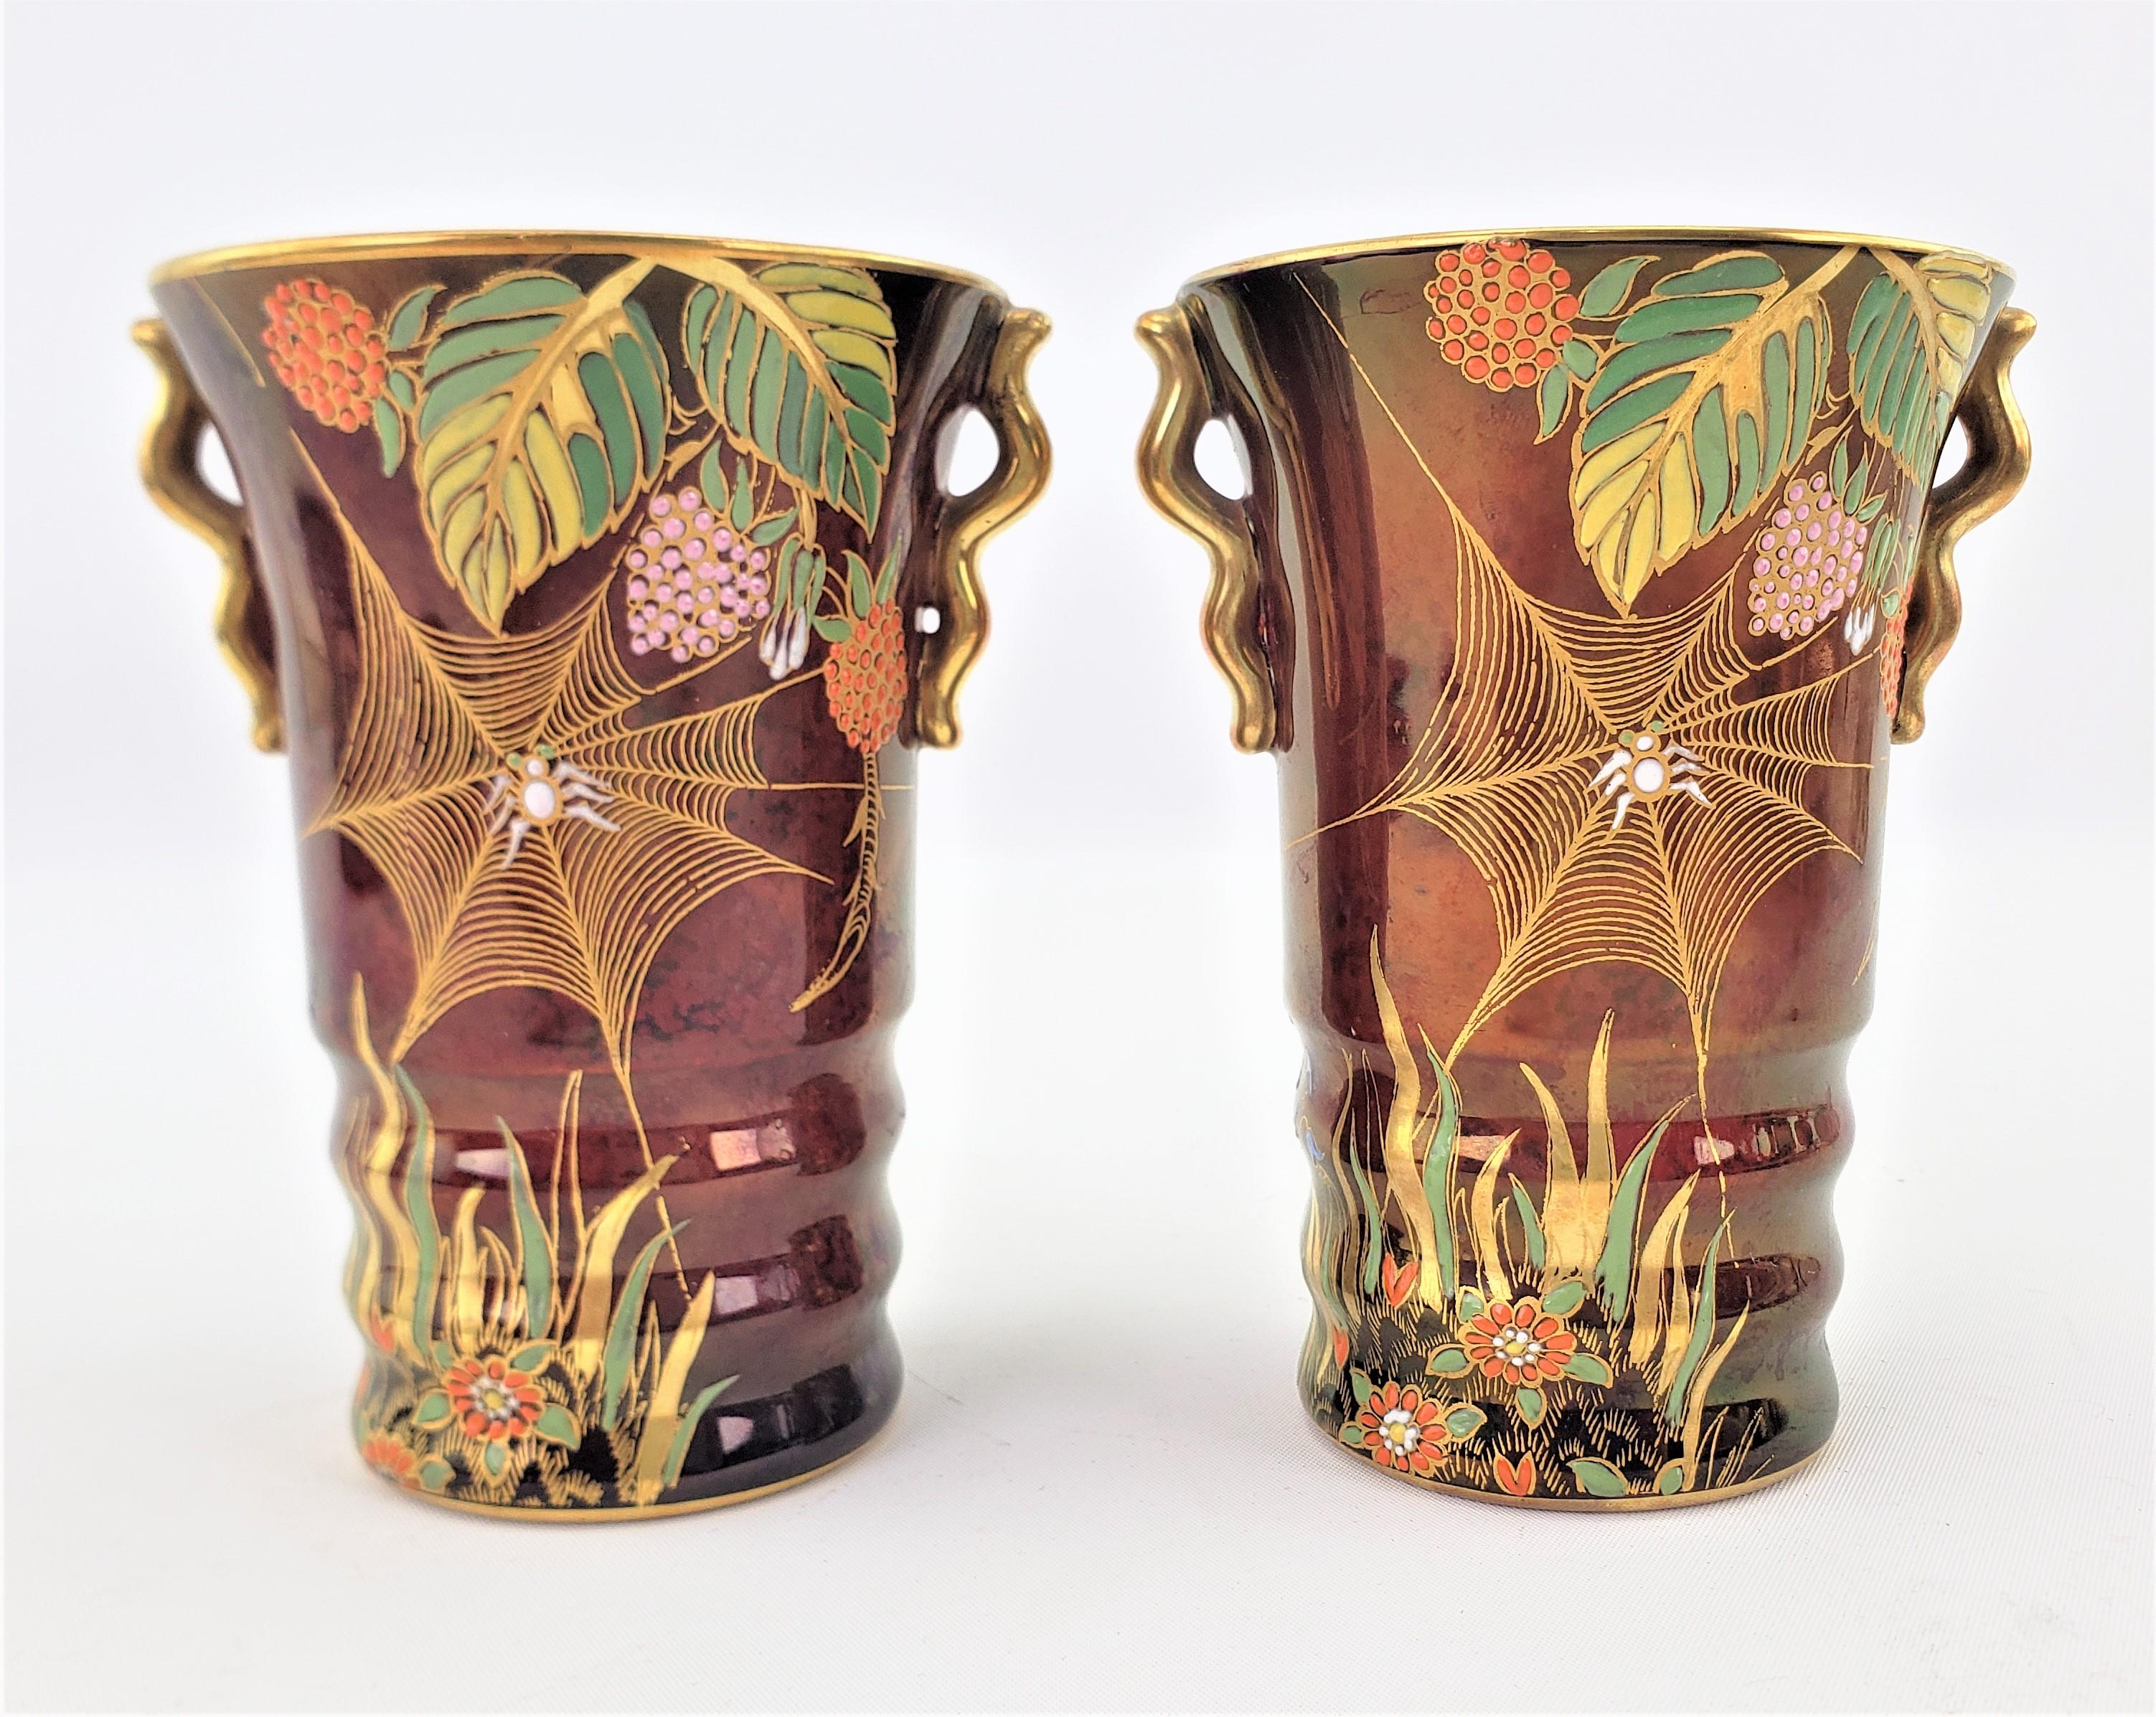 Cette paire de vases en porcelaine Art déco, décorés à la main, a été fabriquée par la célèbre manufacture anglaise Carlton Ware, vers 1920, dans un style Art déco d'époque. Les vases sont réalisés dans la ligne Rouge Royale, avec un fond rouge